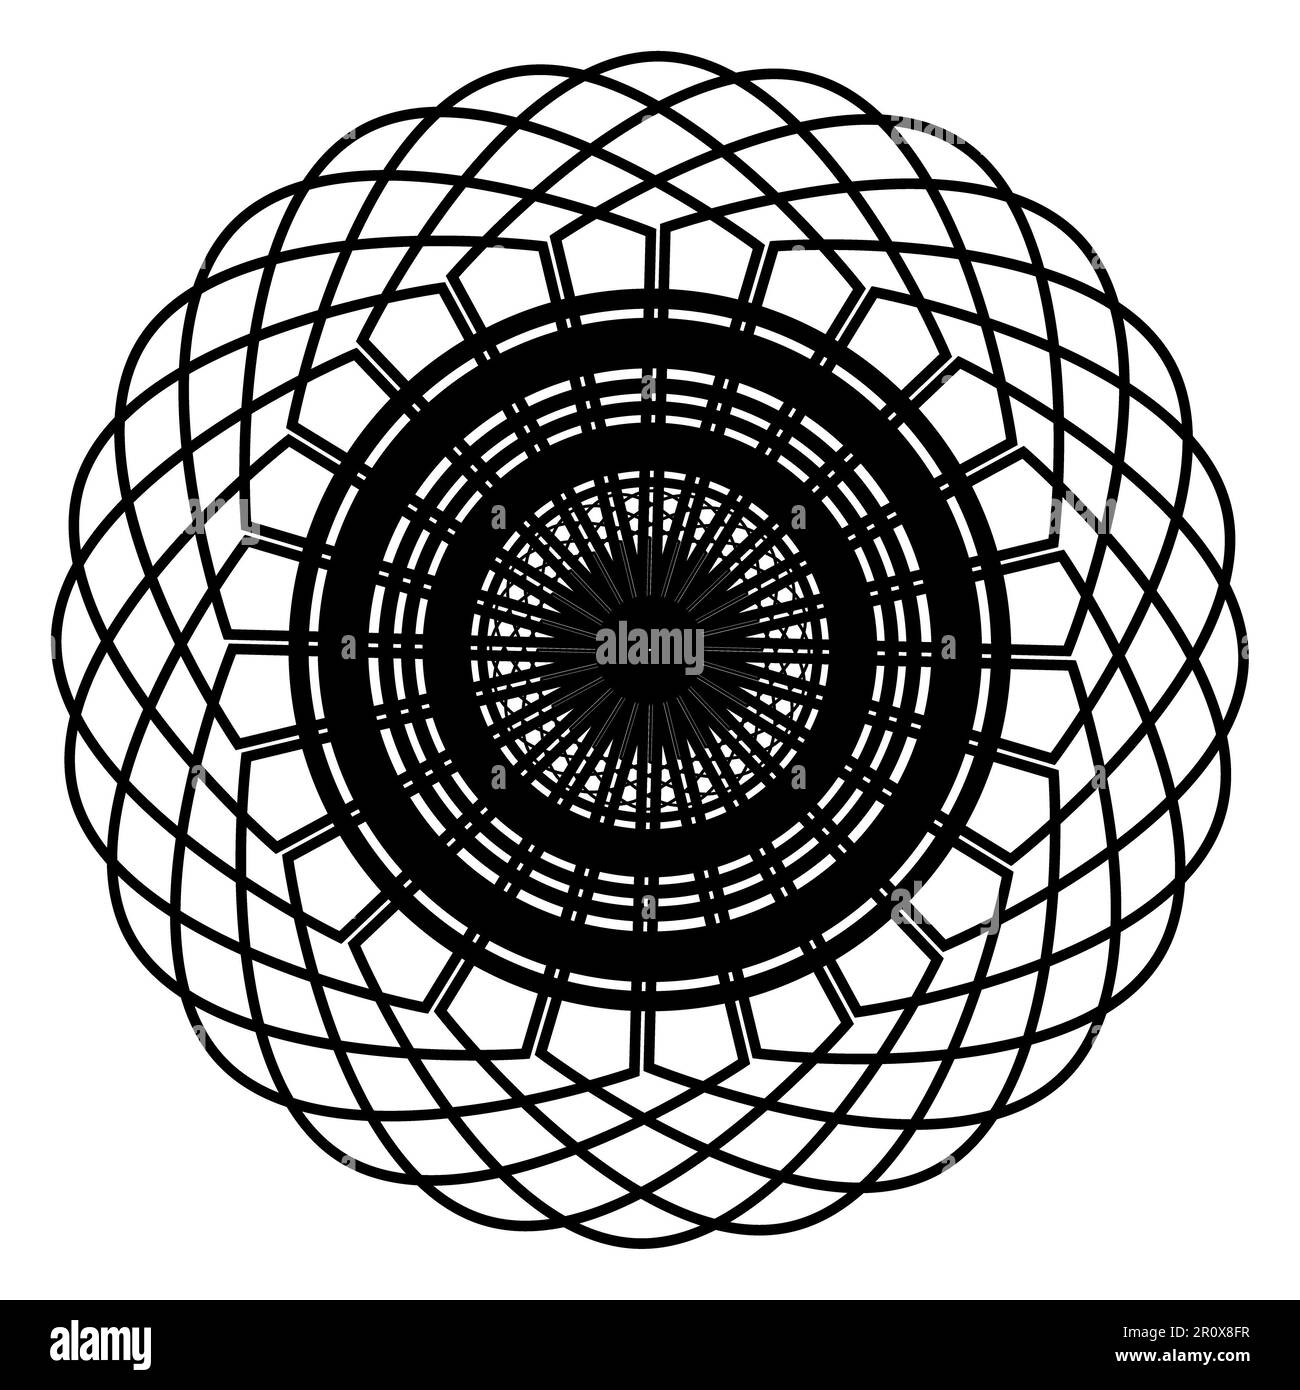 Mandala Art Design Vector Illustration: Mit dieser komplexen und auffälligen Vektorgrafik können Sie Ihre Designs noch weiter verbessern. Stockfoto